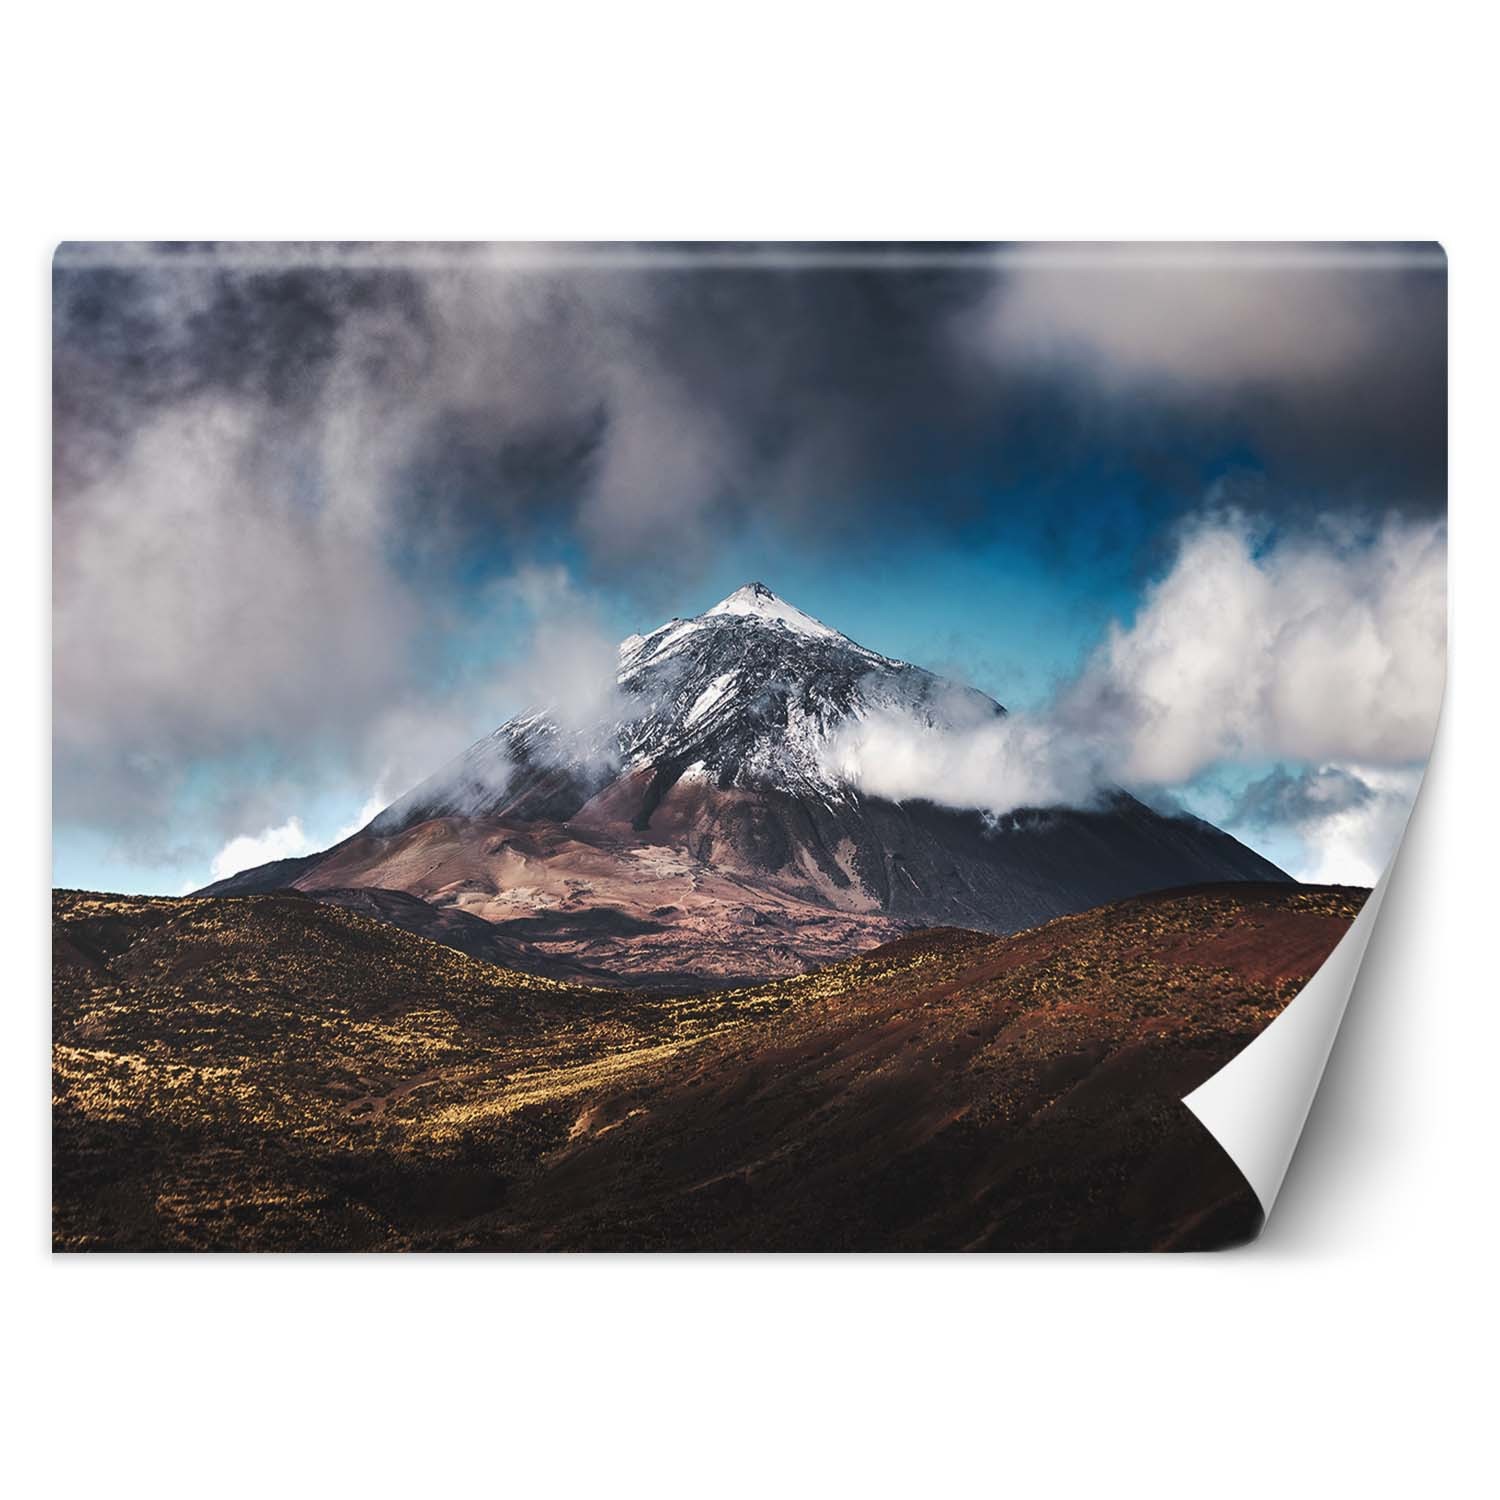 Trend24 – Behang – Bergtop In De Wolken – Behangpapier – Fotobehang Natuur – Behang Woonkamer – 450x315x2 cm – Incl. behanglijm